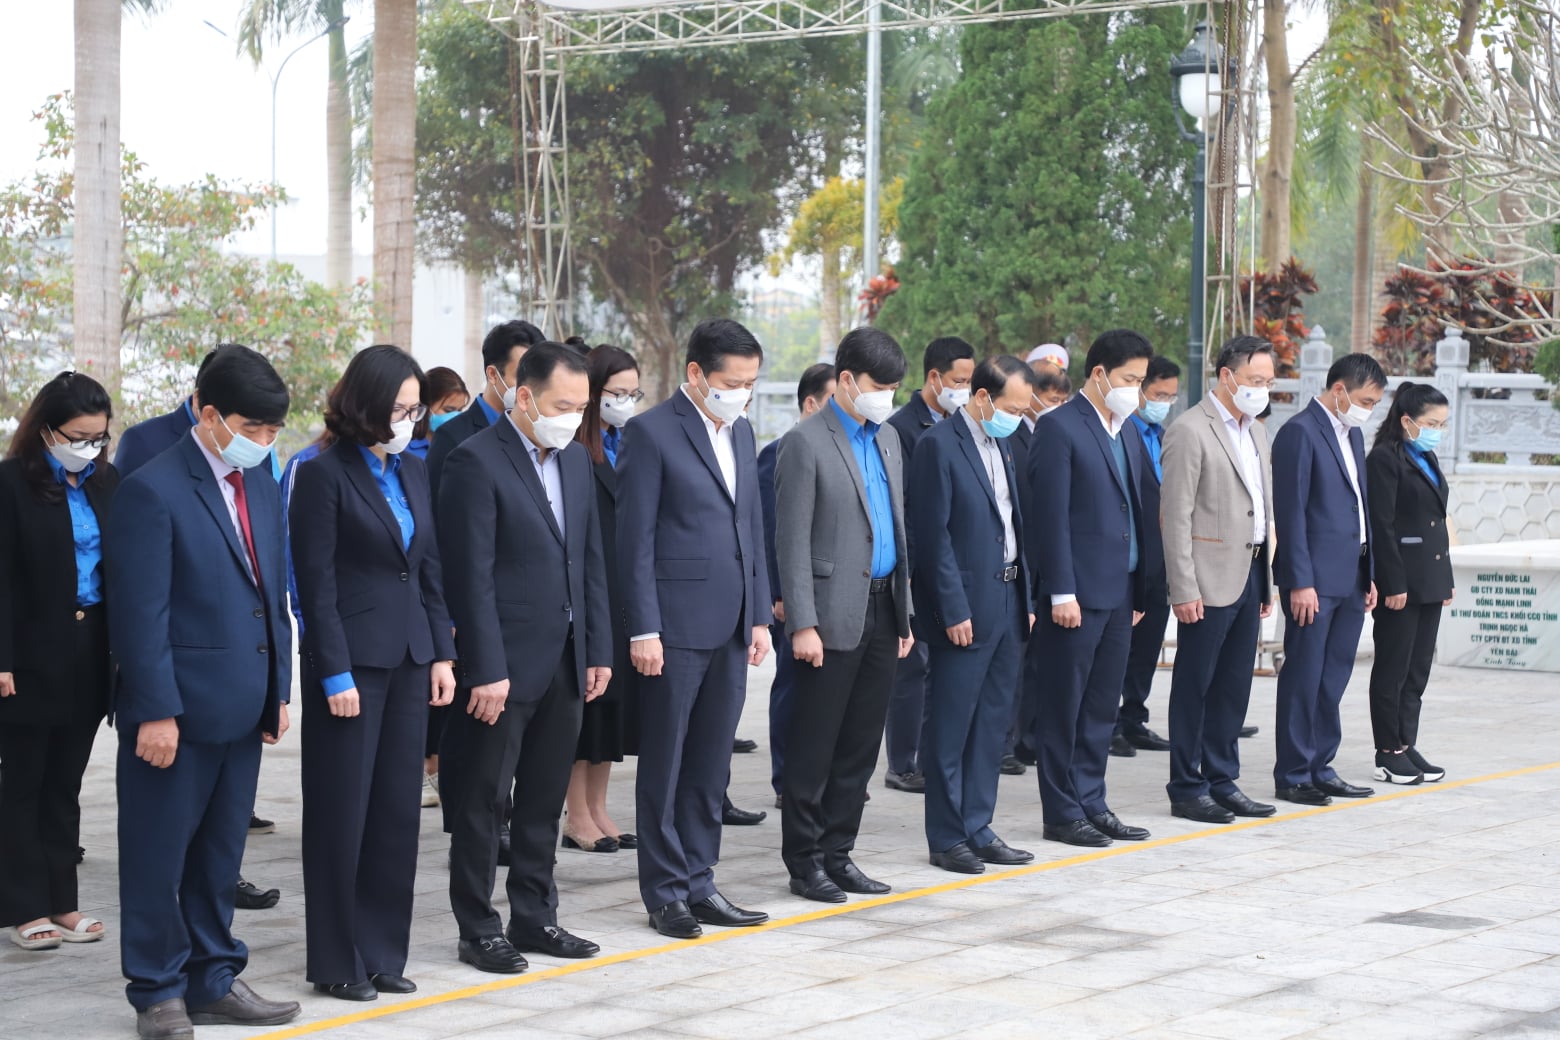 Trong khuôn khổ Chương trình, đoàn công tác đến dâng hương tại Nghĩa trang liệt sỹ Quốc gia Vị Xuyên, tỉnh Hà Giang